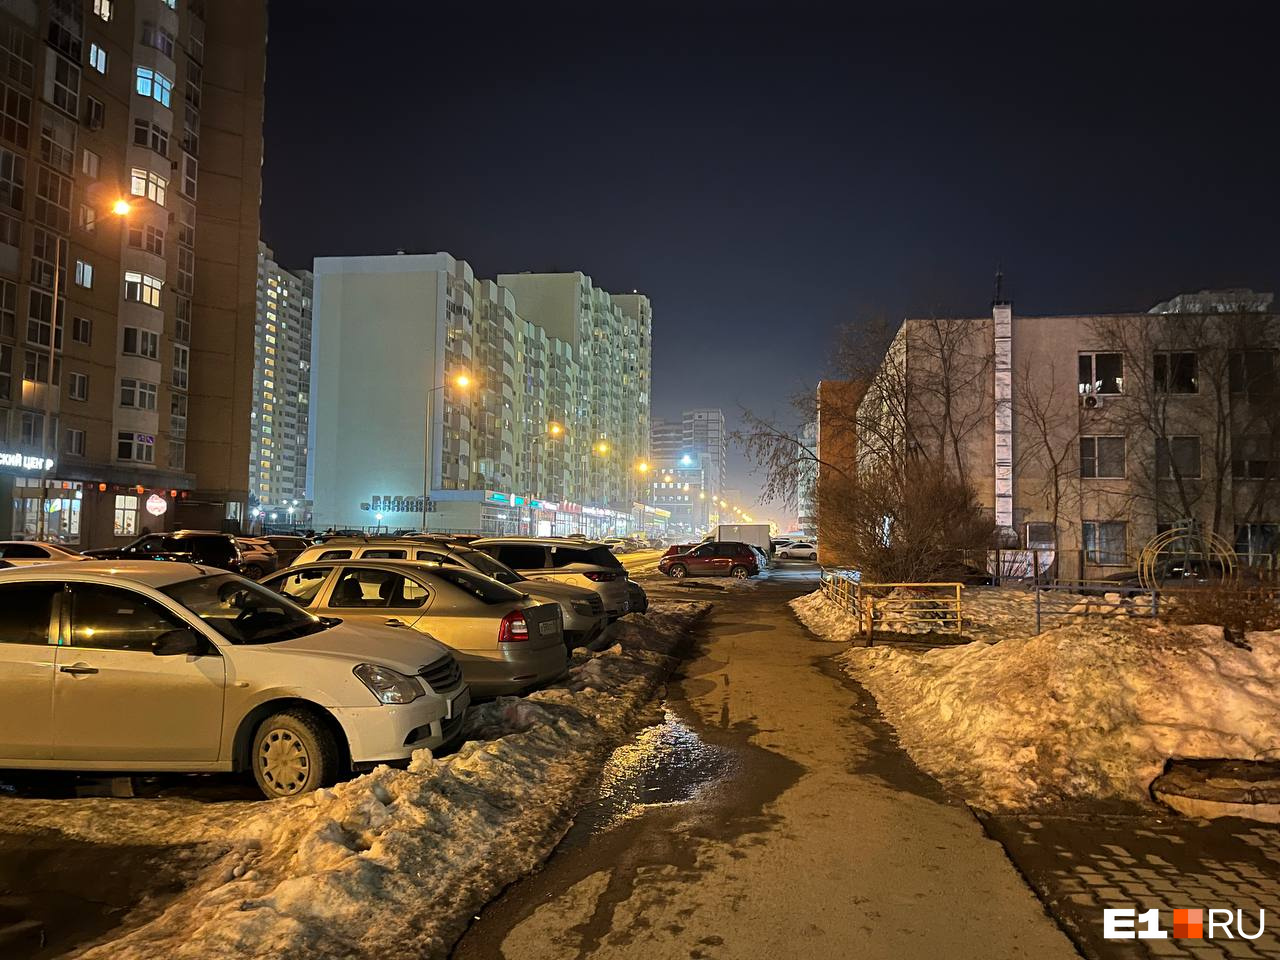 Начинаем пыль глотать: в Екатеринбурге появилась весенняя дымка, которая не радует